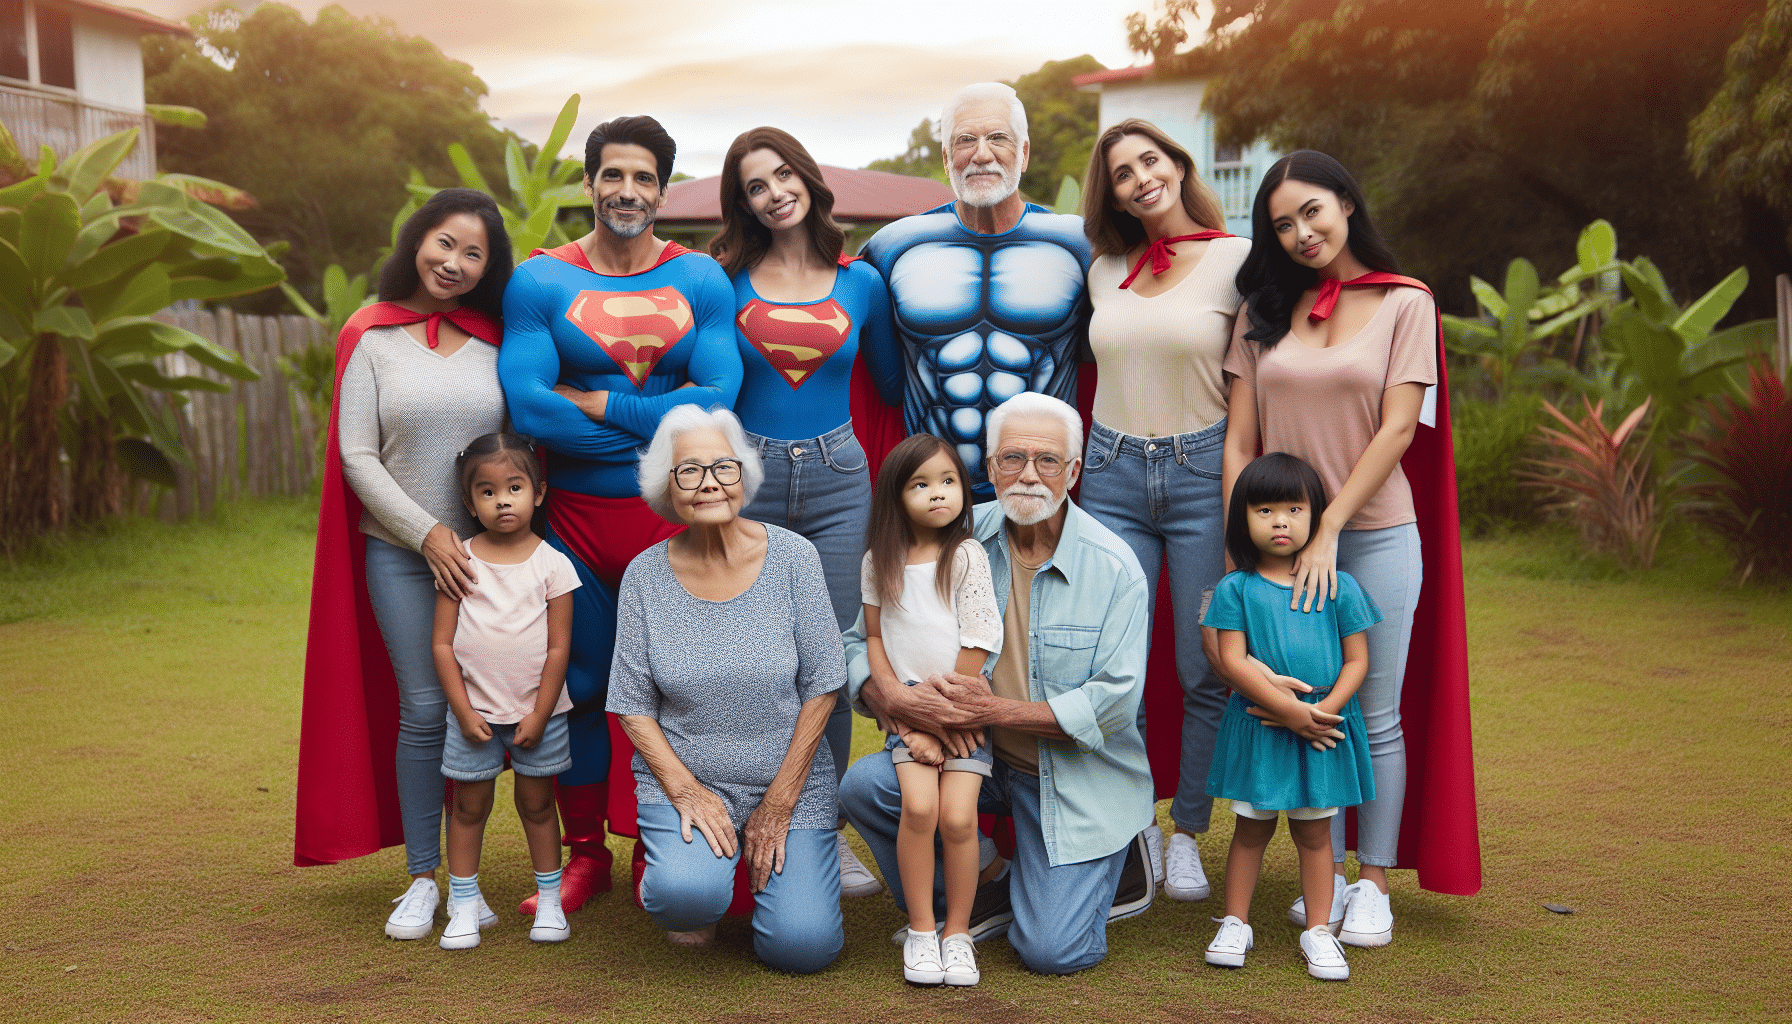 les grands-parents jouent un rôle incroyable auprès de leurs petits-enfants. découvrez pourquoi ils sont les véritables super-héros de l'enfance !